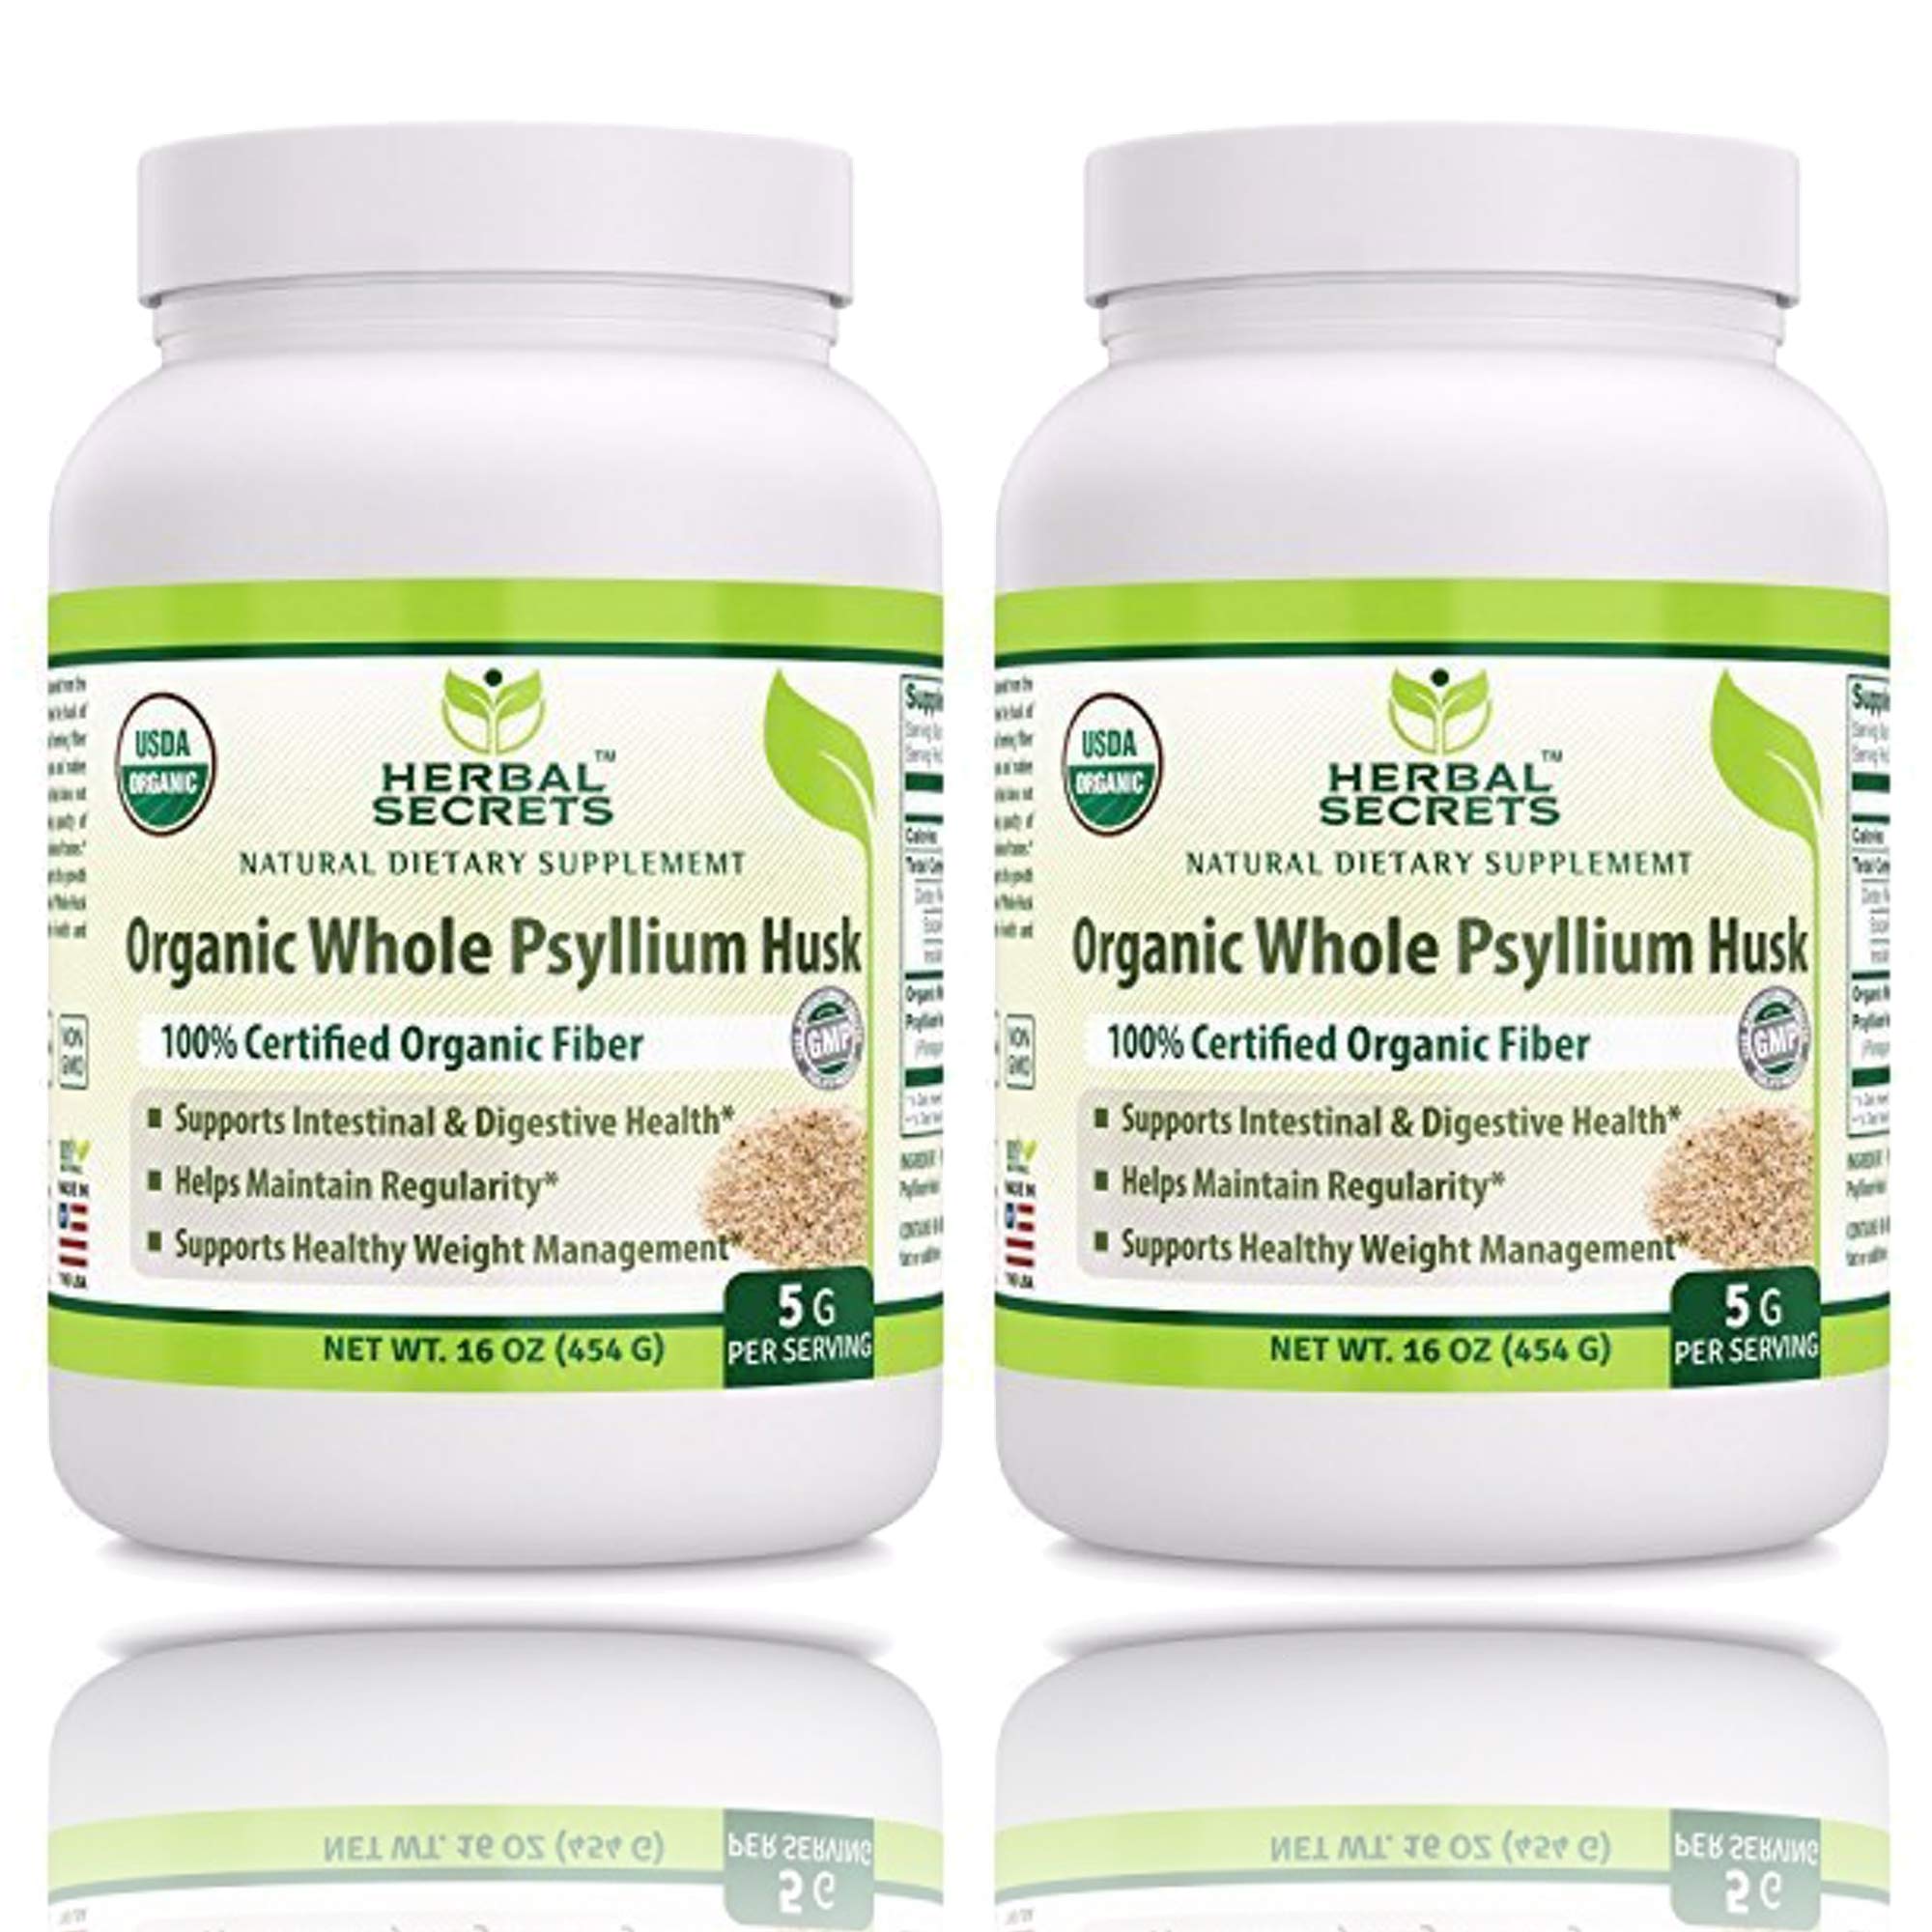 Herbal Secrets USDA Certified Organic Psyllium Husk 16 Oz - Vegan, Dairy Free, GMO Free, Gluten Free, no Sugar, (Pack of 2)